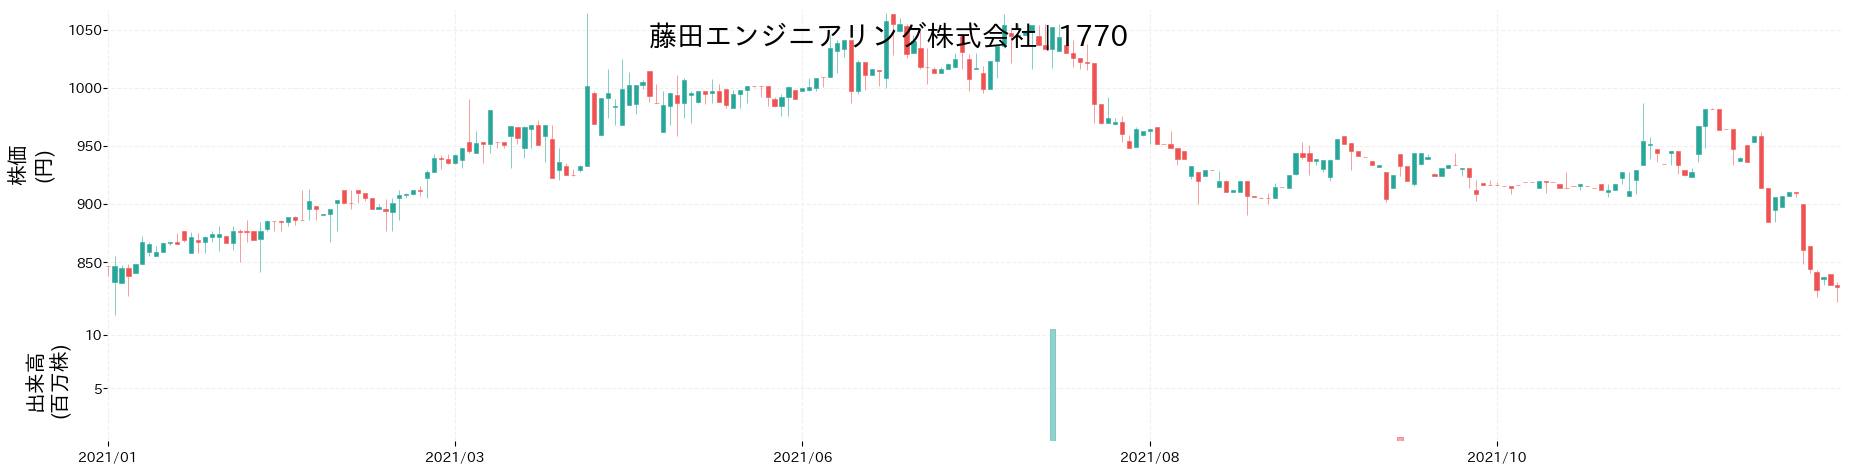 藤田エンジニアリングの株価推移(2021)